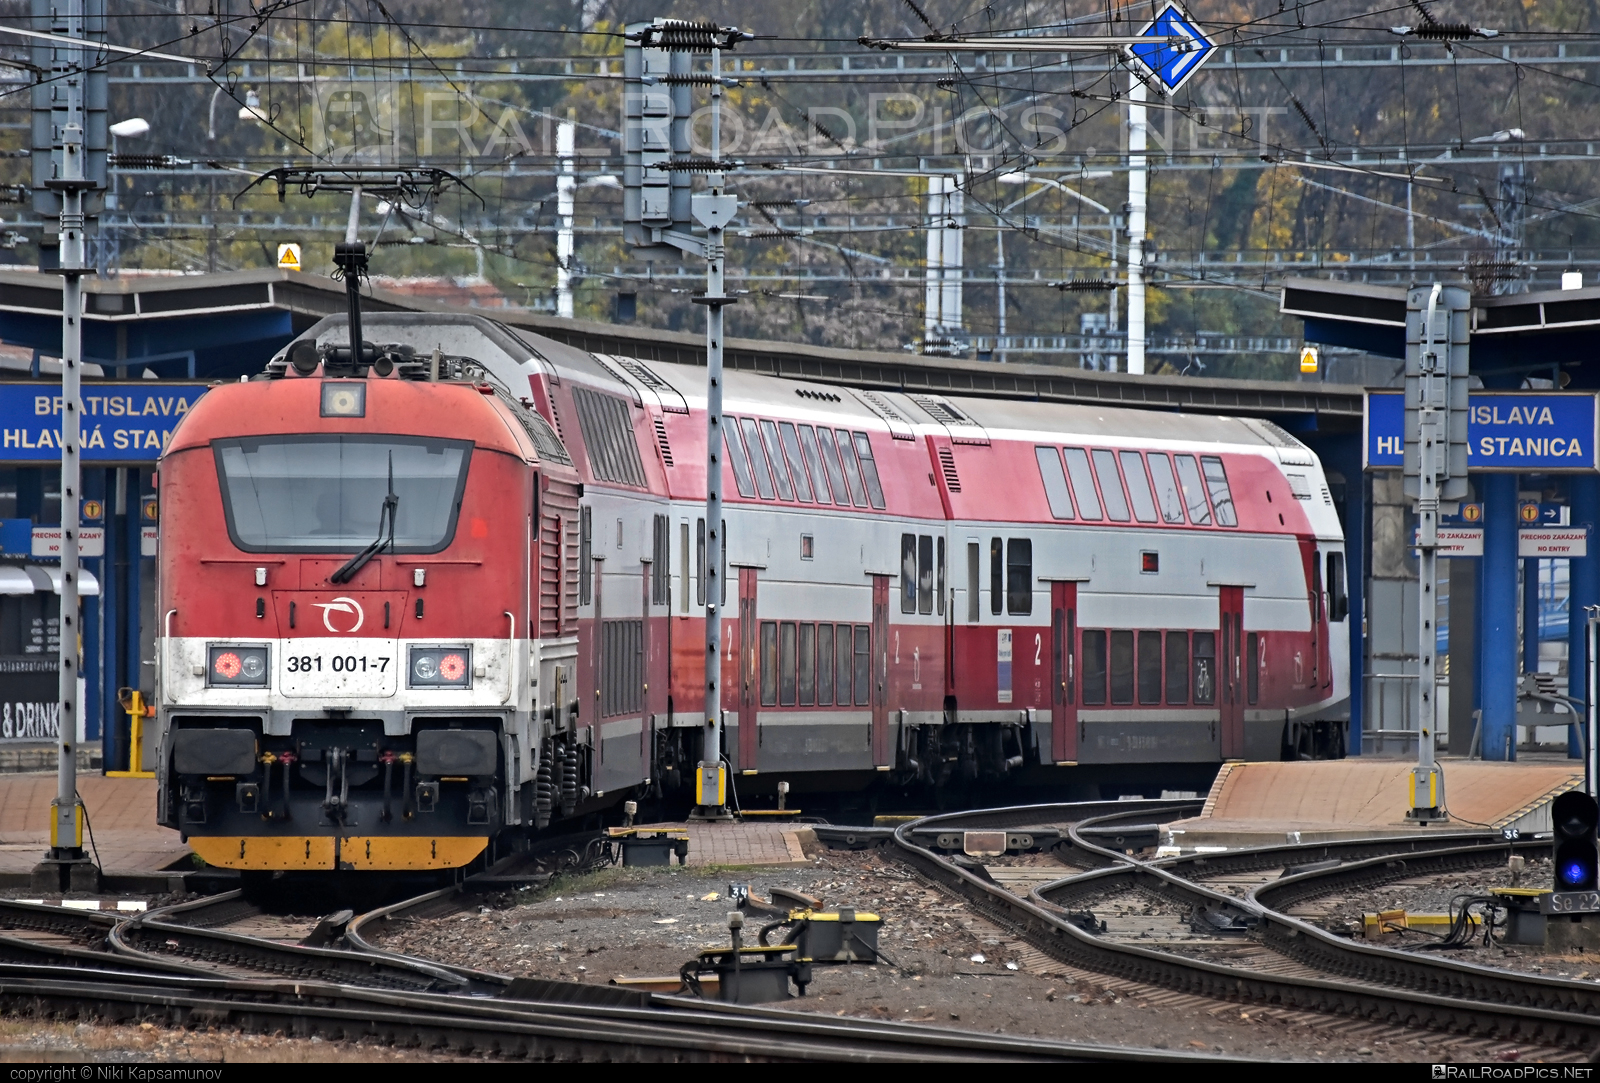 Škoda 109E2 Emil Zátopek - 381 001-7 operated by Železničná Spoločnost' Slovensko, a.s. #ZeleznicnaSpolocnostSlovensko #emilzatopeklocomotive #locomotive381 #skoda #skoda109e #skoda109elocomotive #zssk